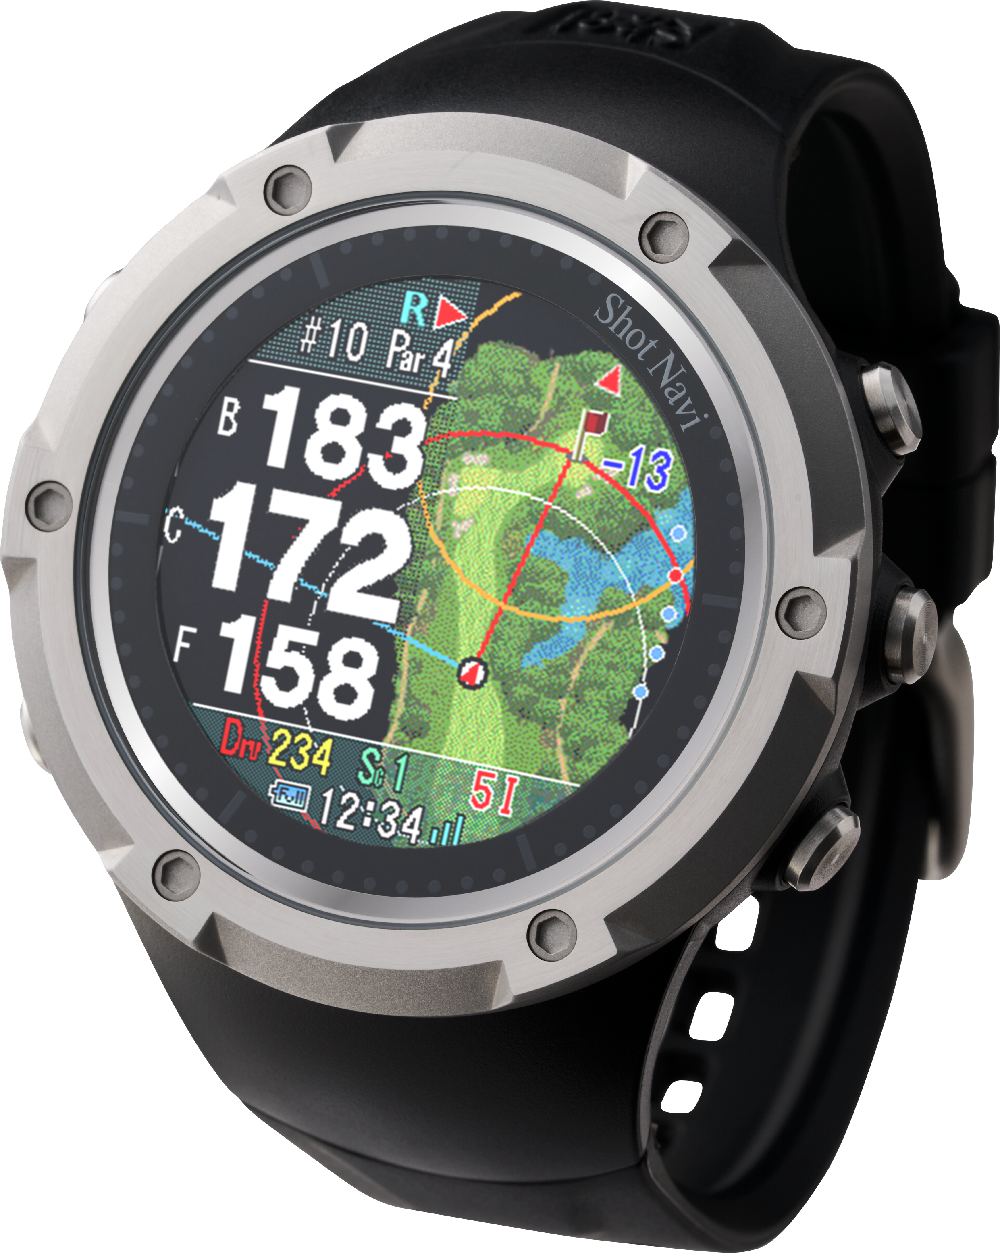 腕時計型GPSゴルフナビ Shot Naviの大ヒットモデル
Evolveシリーズ新製品『Evolve SE』が7月1日発売　
マルチ衛星測位対応で精度の高い計測と薄型、
軽量化で装着感UPを実現